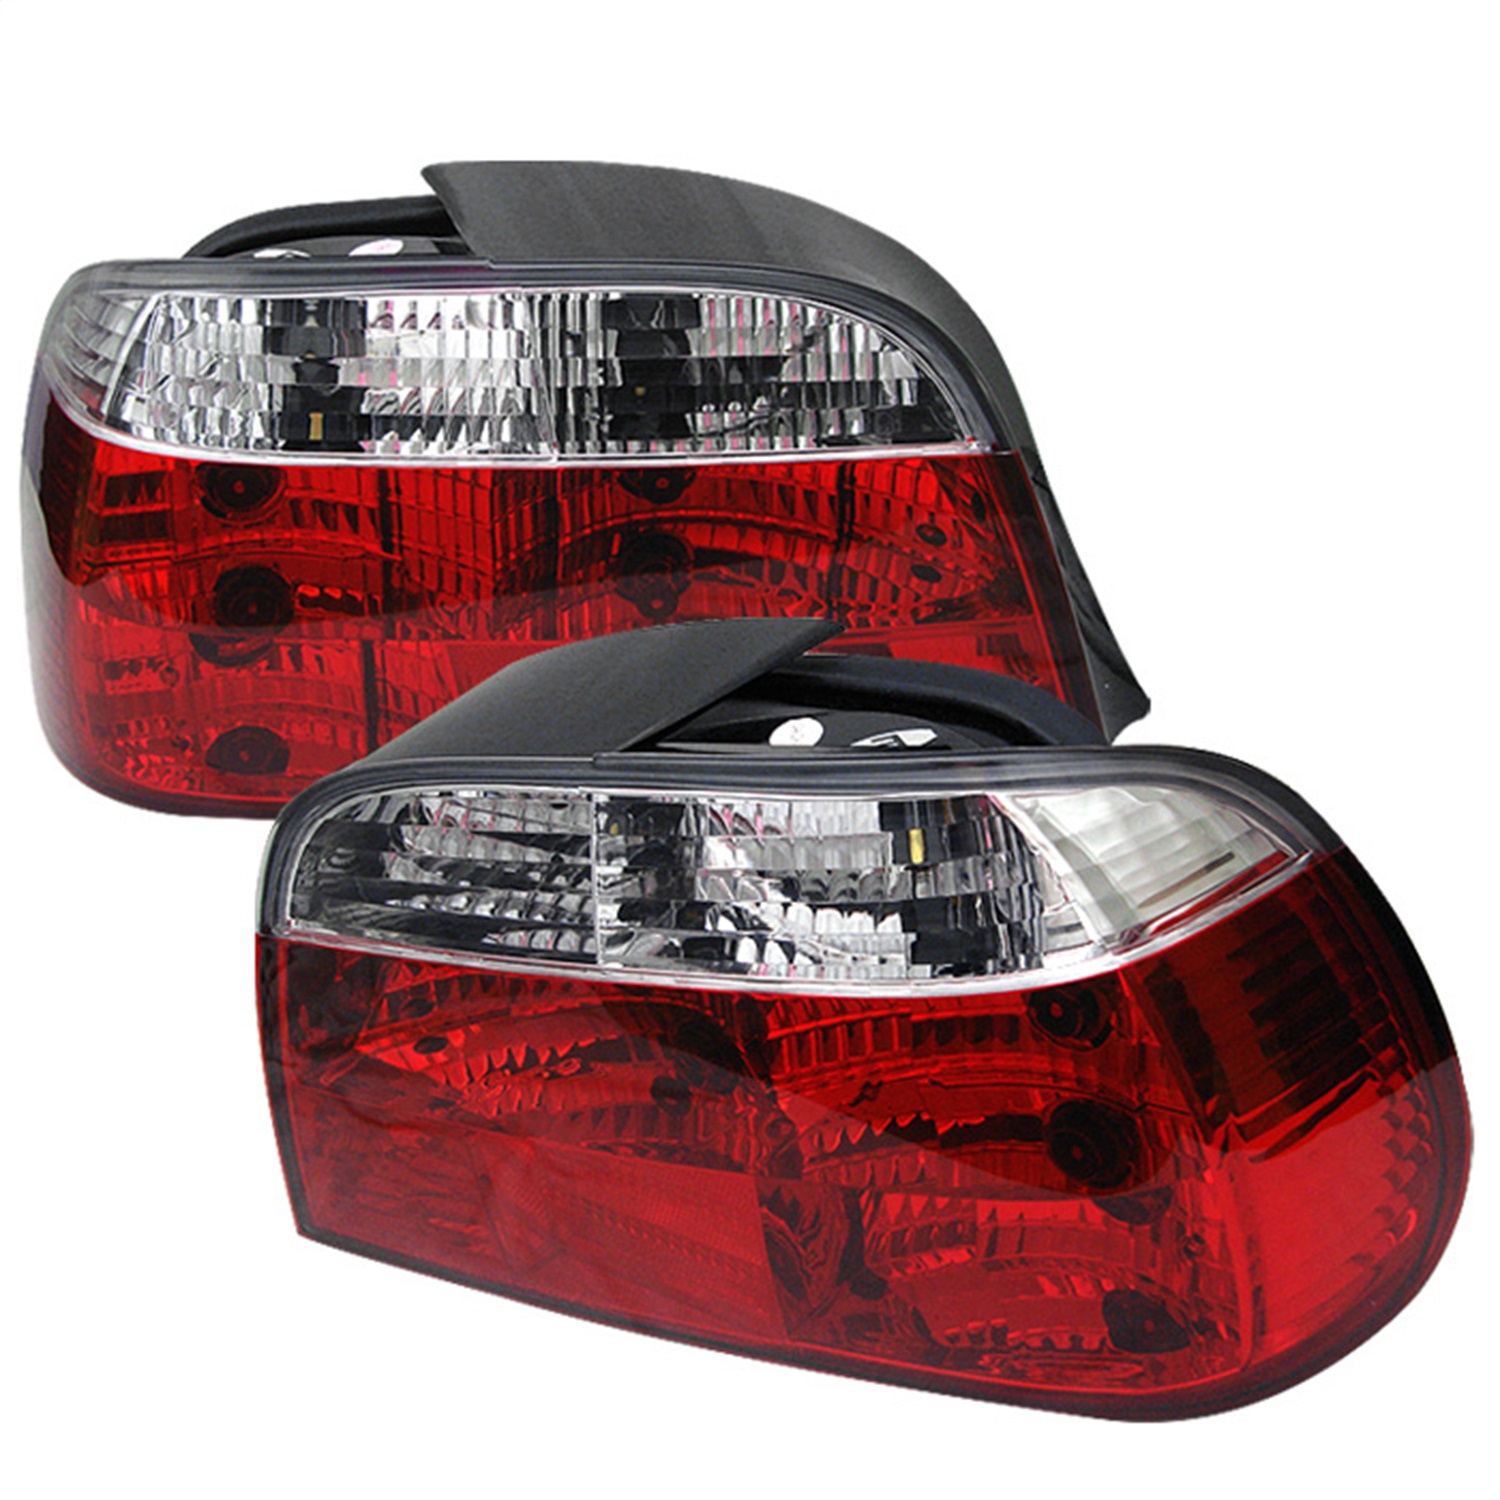 Spyder Auto 5000651 Crystal Tail Lights Fits 95-01 740i 740iL 750iL